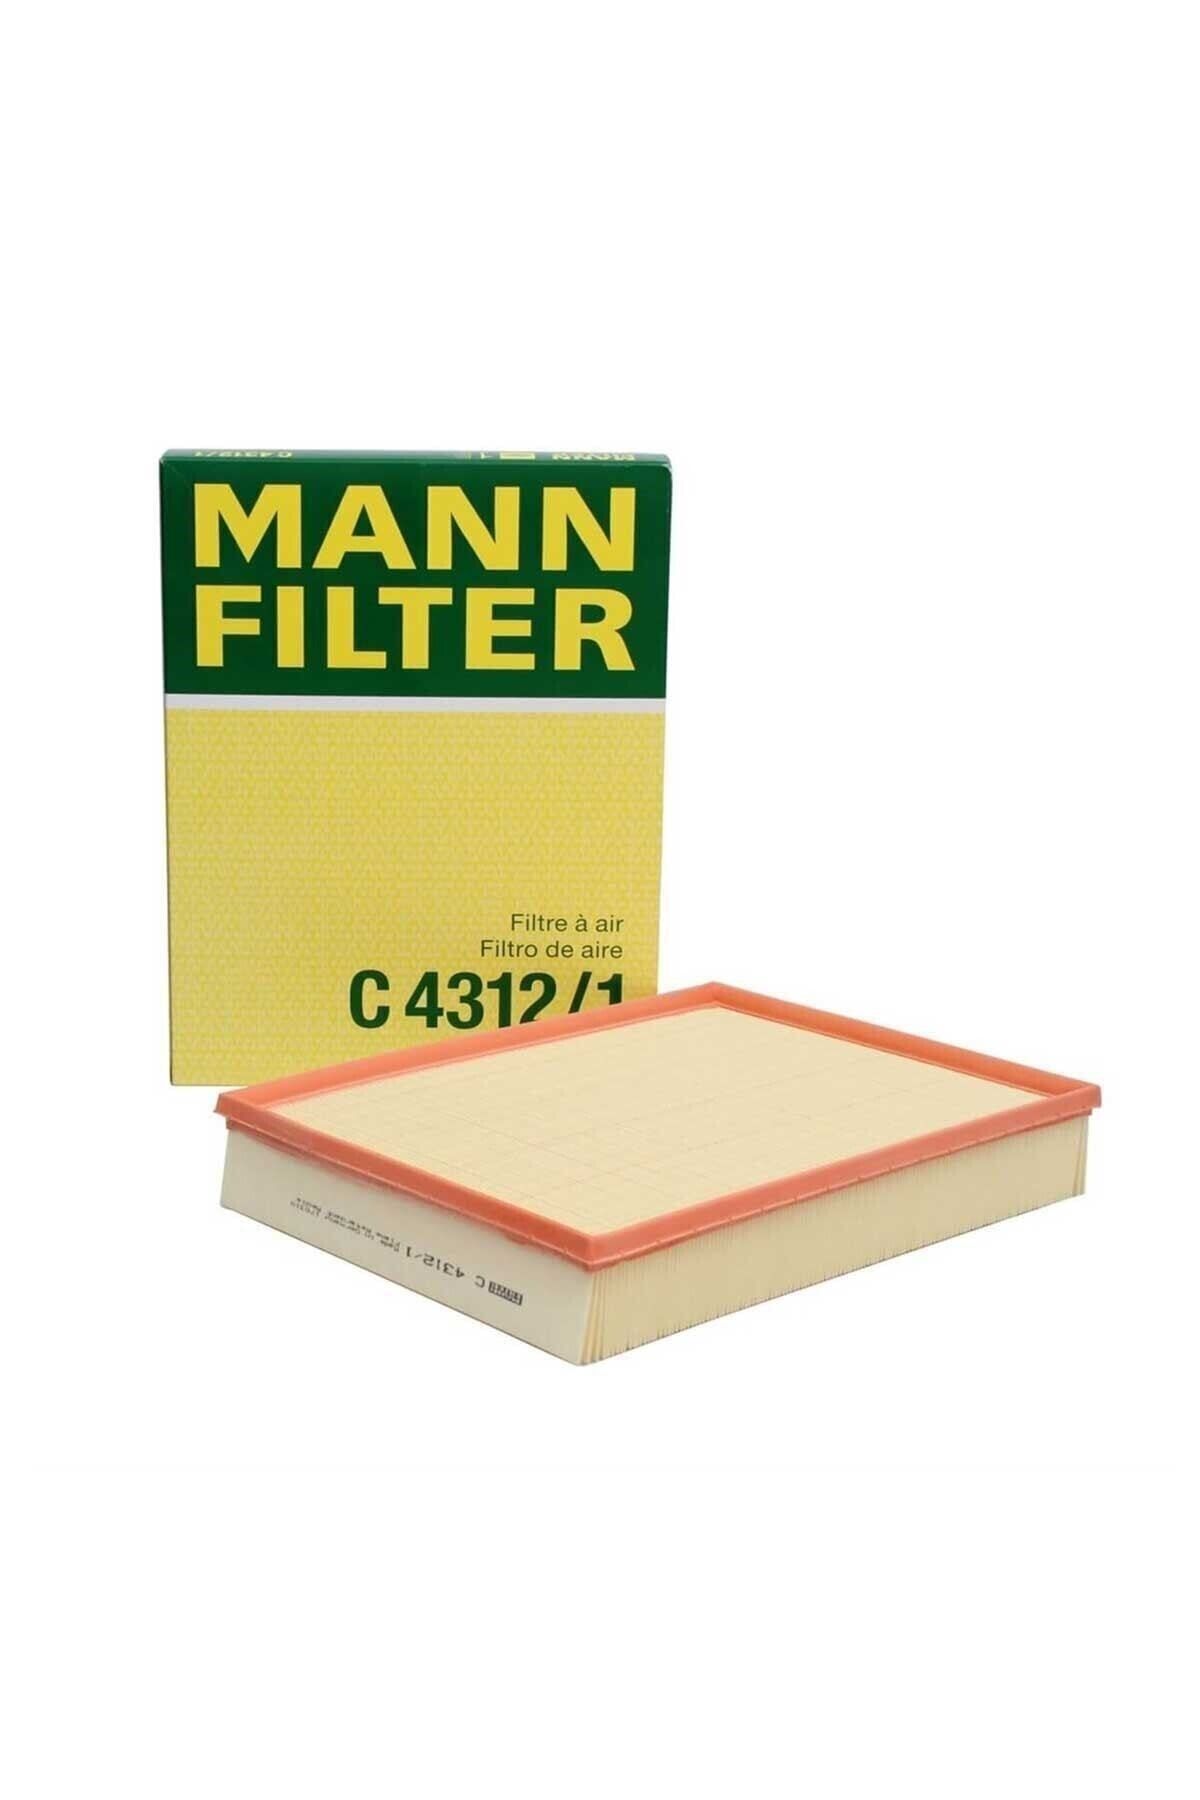 Фильтр воздушный спринтер. Mann c4312/1 воздушный фильтр. Фильтр Манн воздушный 4312\1. Воздушный фильтр Манн Крафтер Спринтер. Фильтр Mann c21 014.